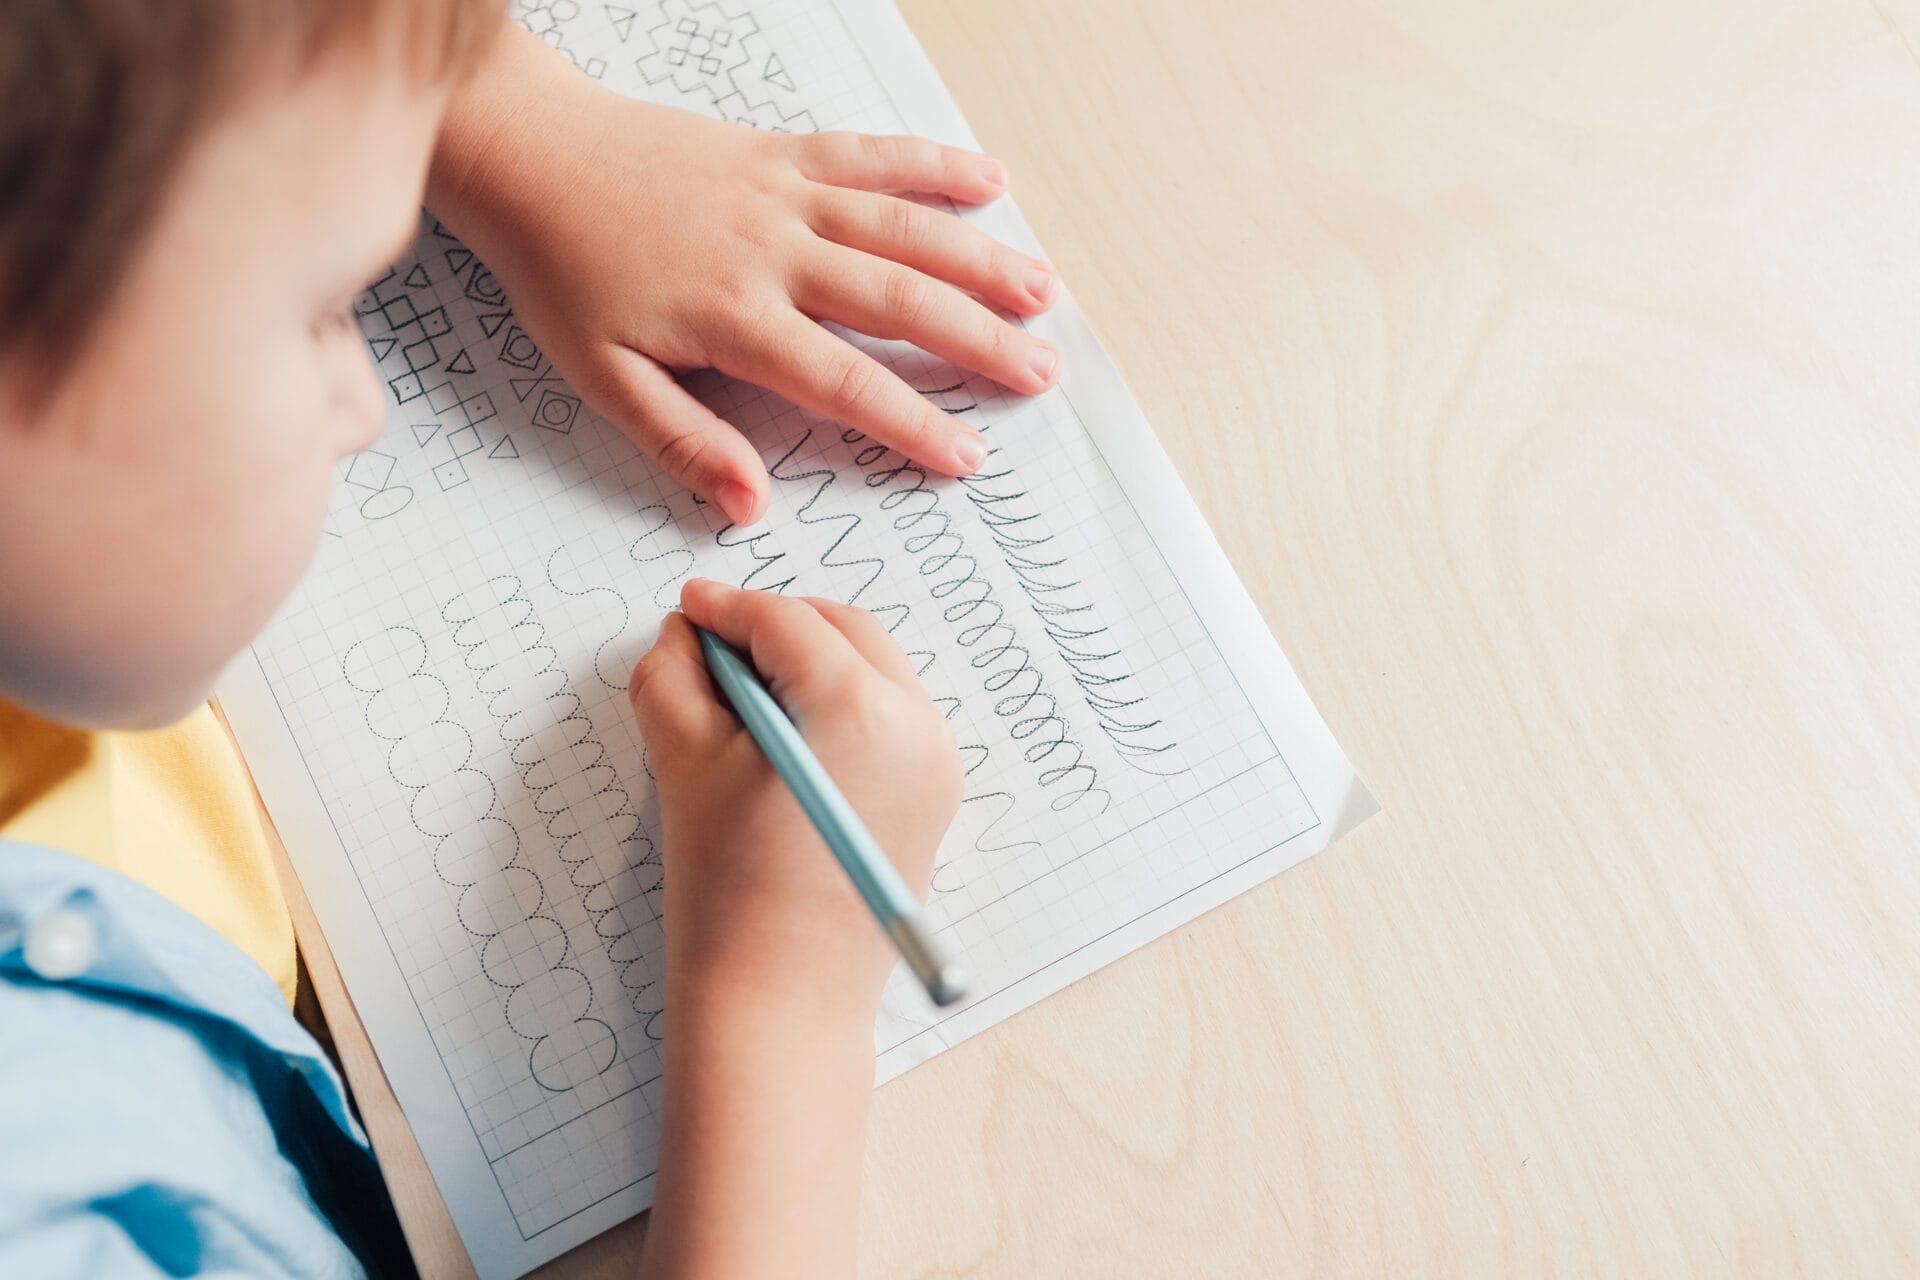 Les 15 types d'exercices gratuits pour aider un enfant dyslexique [guide]